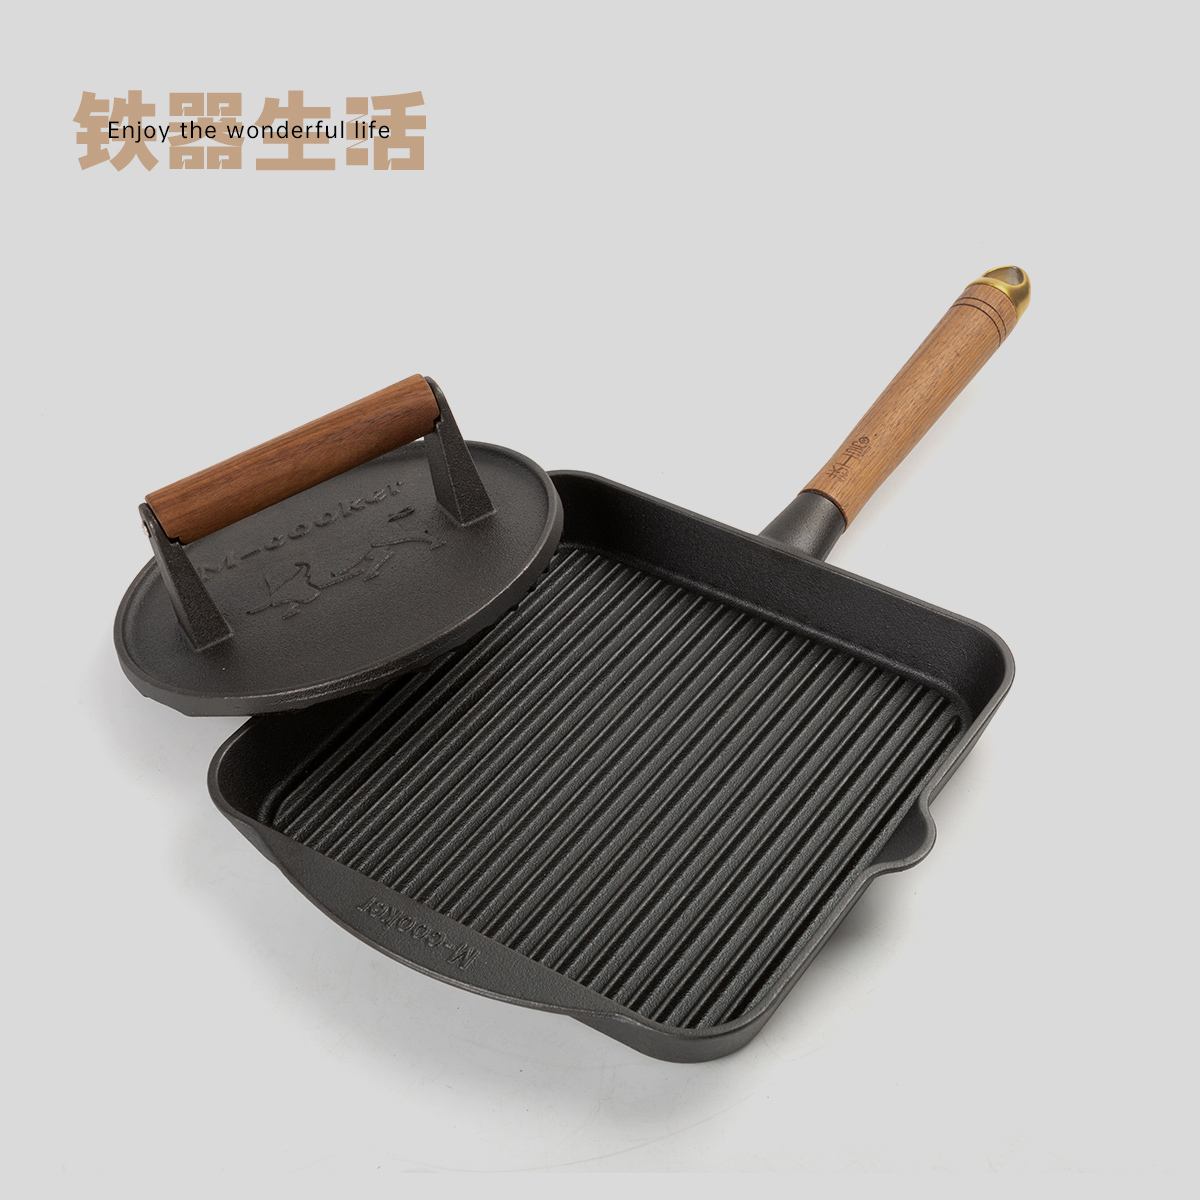 铁器生活 铸铁条纹牛排煎锅平底锅无涂层专用铁板烧带压肉板烤肉